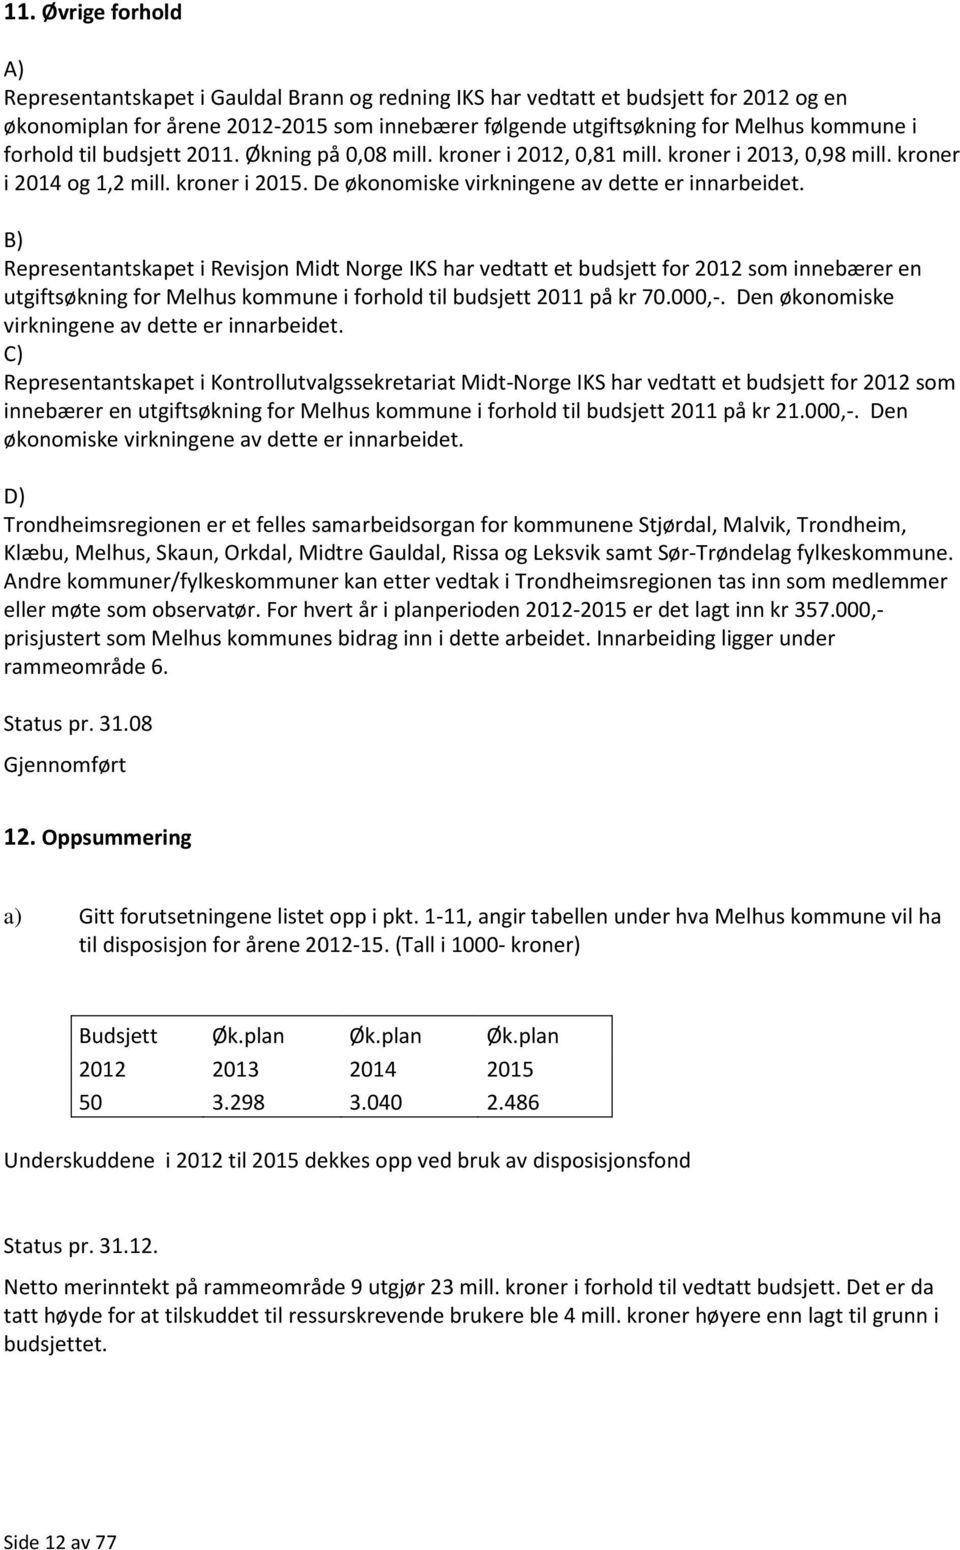 B) Representantskapet i Revisjon Midt Norge IKS har vedtatt et budsjett for 2012 som innebærer en utgiftsøkning for Melhus kommune i forhold til budsjett 2011 på kr 70.000,-.